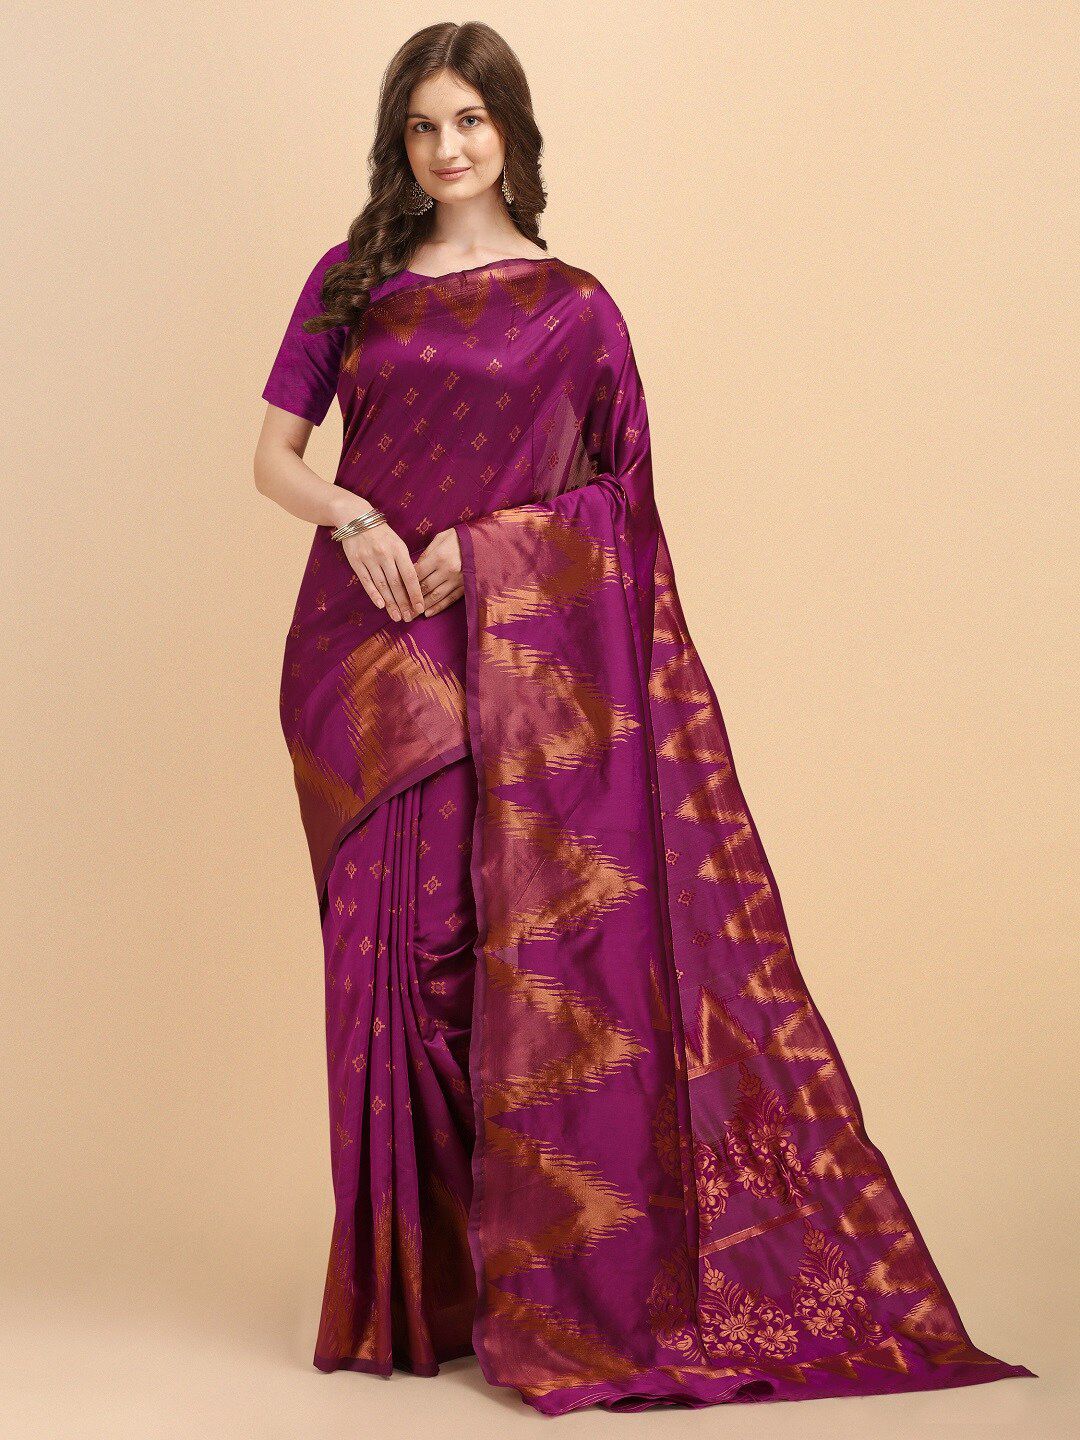 Naishu Trendz Ethnic Motifs Zari Pure Silk Kanjeevaram Saree Price in India